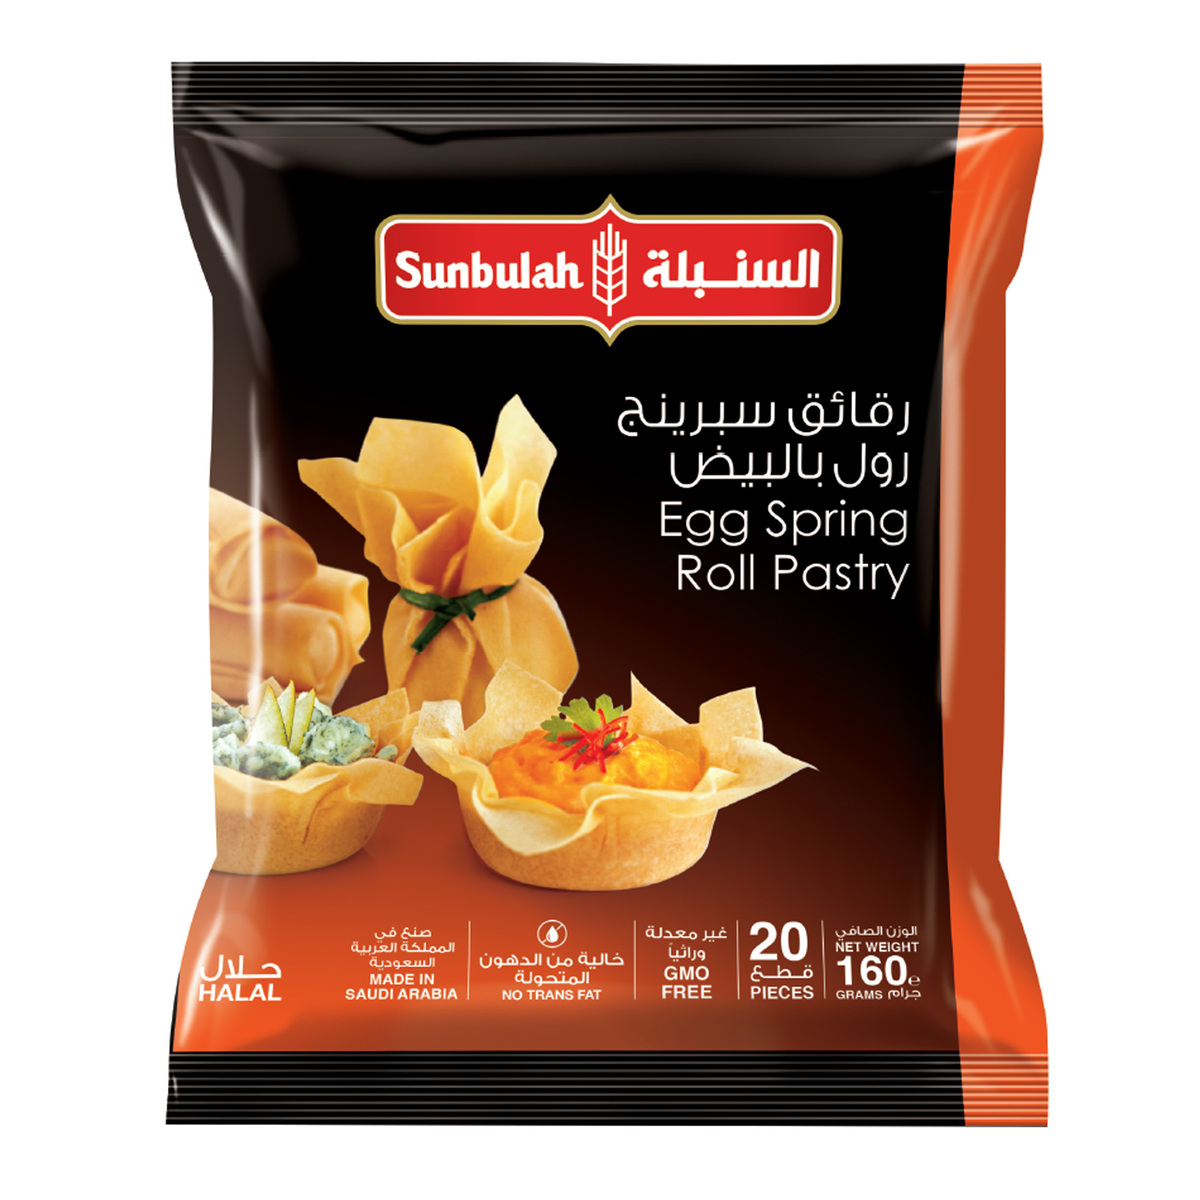 Buy Sunbulah Egg Spring Roll Pastry 160 g Online at Best Price | Frozen Pastry | Lulu UAE in Egypt